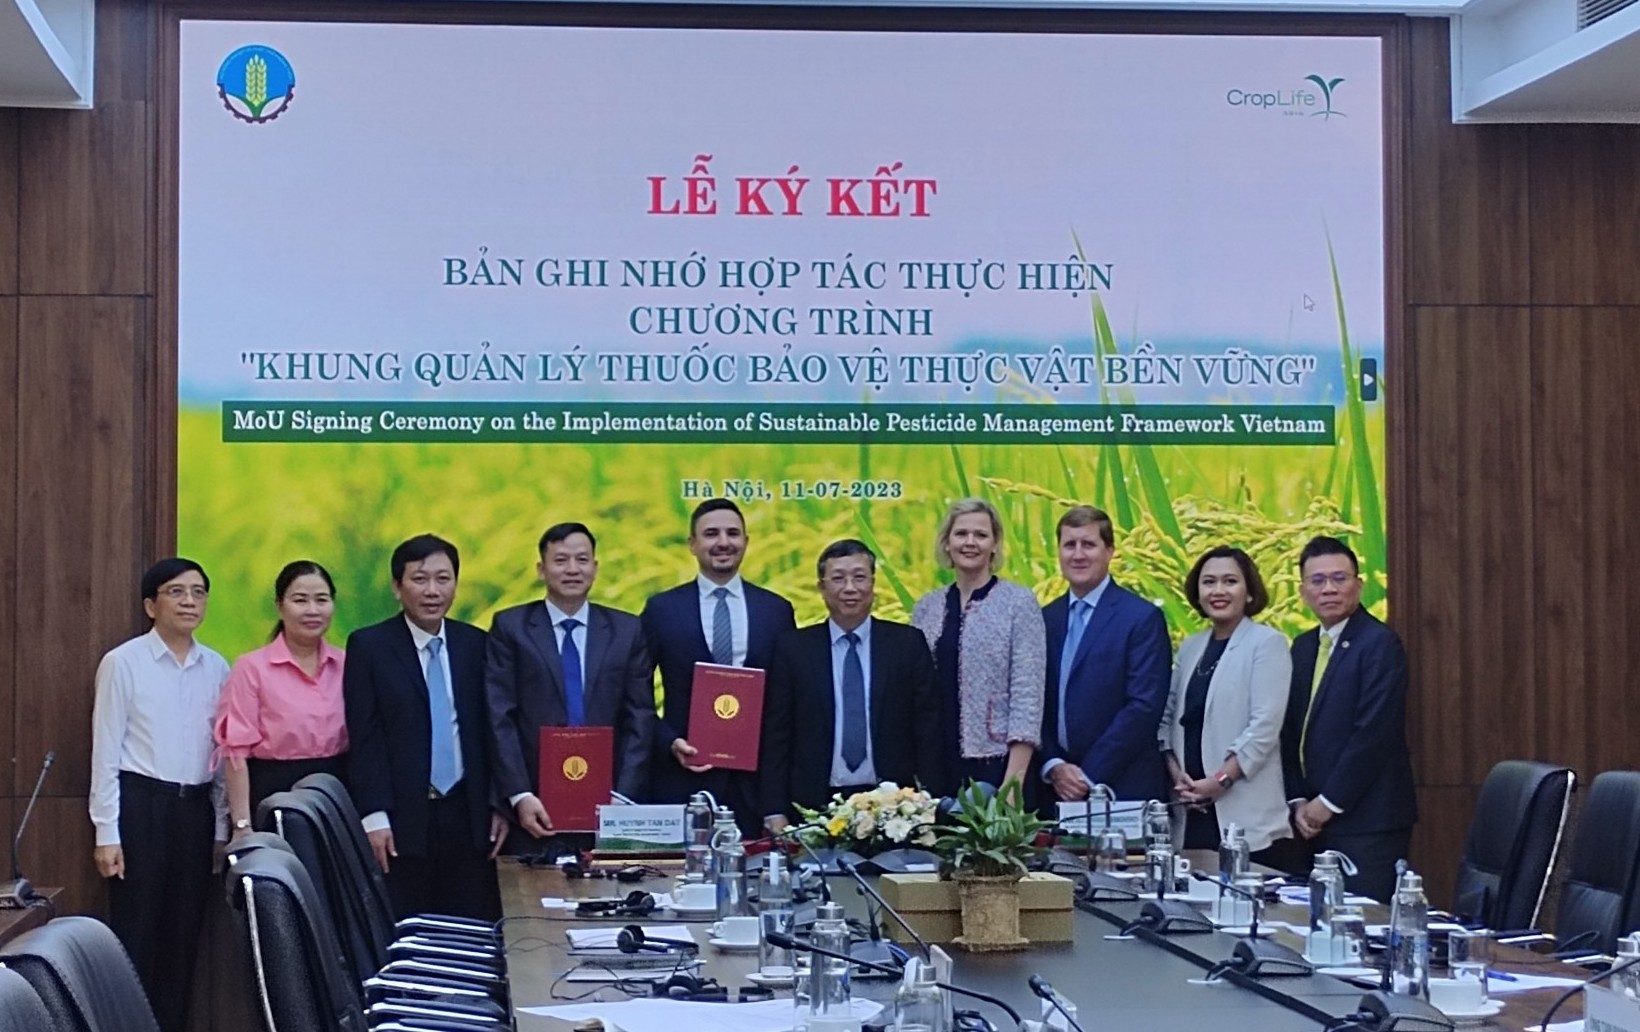 Kí kết thực hiện Khung quản lý thuốc bảo vệ thực vật bền vững, đưa nông nghiệp Việt Nam lên &quot;tầm cao mới&quot; - Ảnh 1.